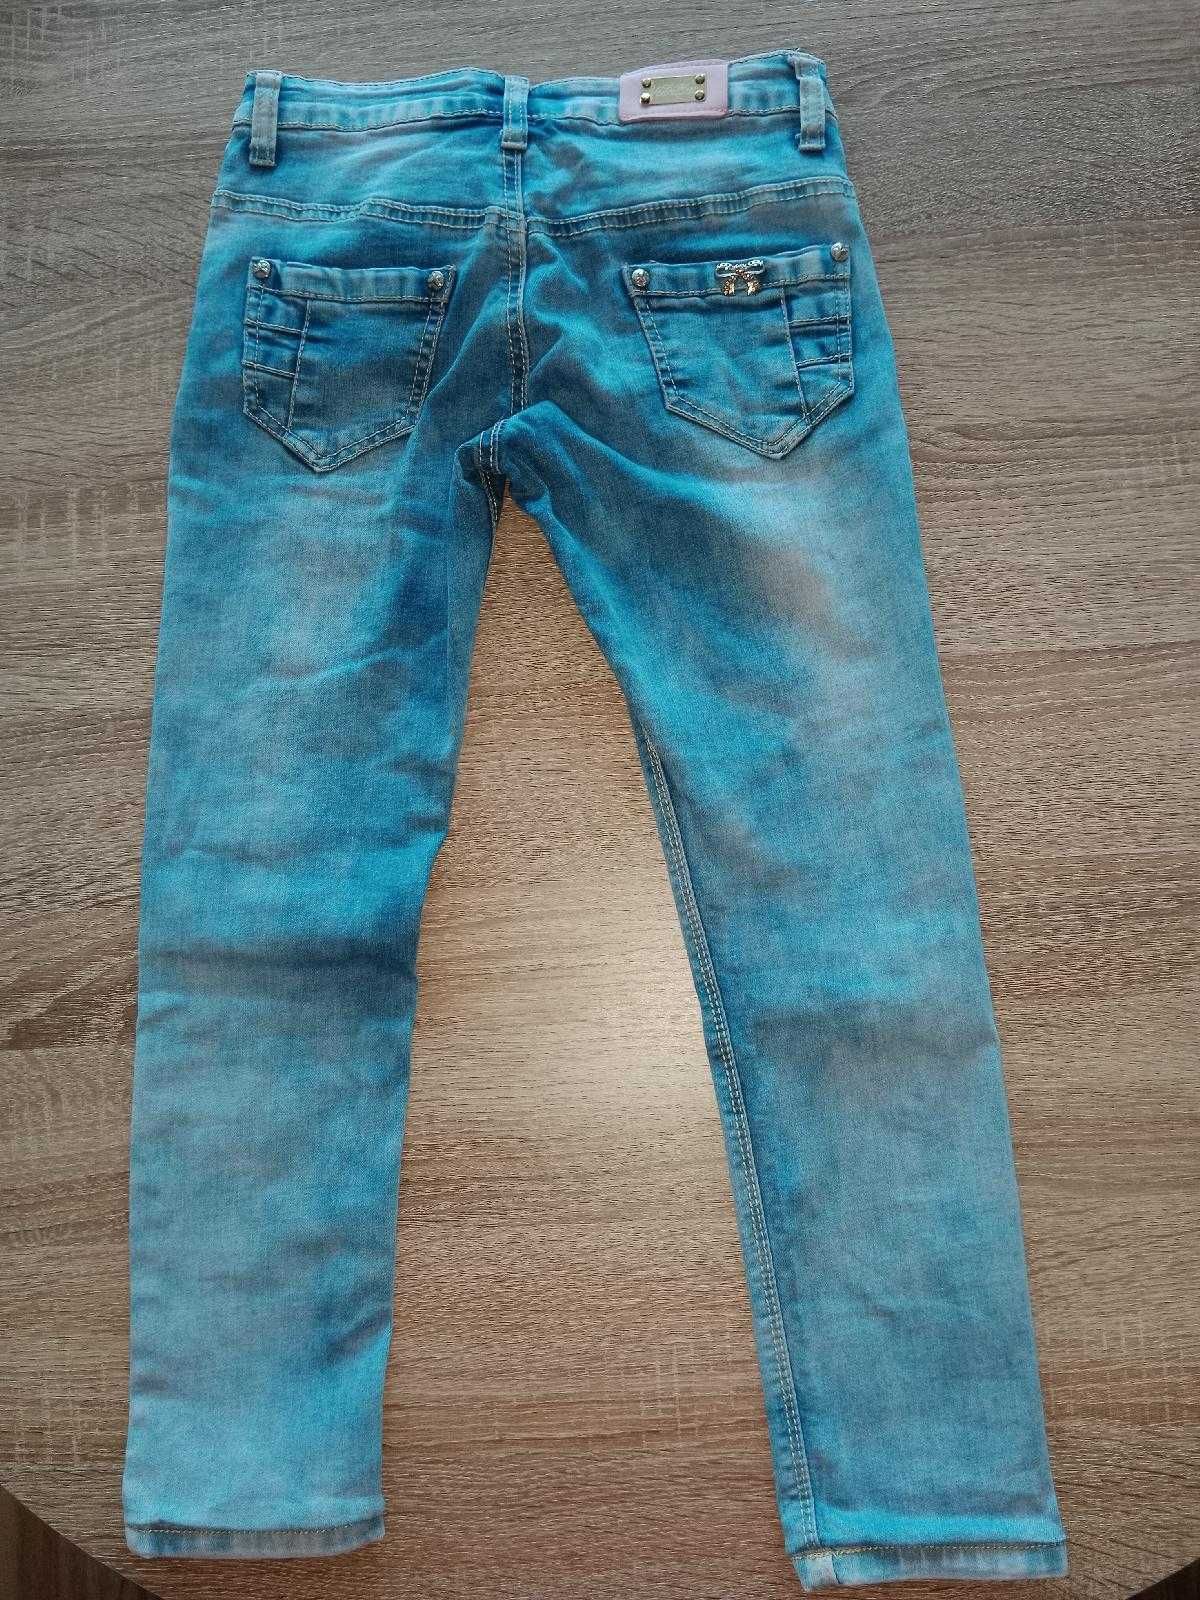 Spodnie jeansowe dżinsowe używane elastyczne rozmiar 134/140 tanio